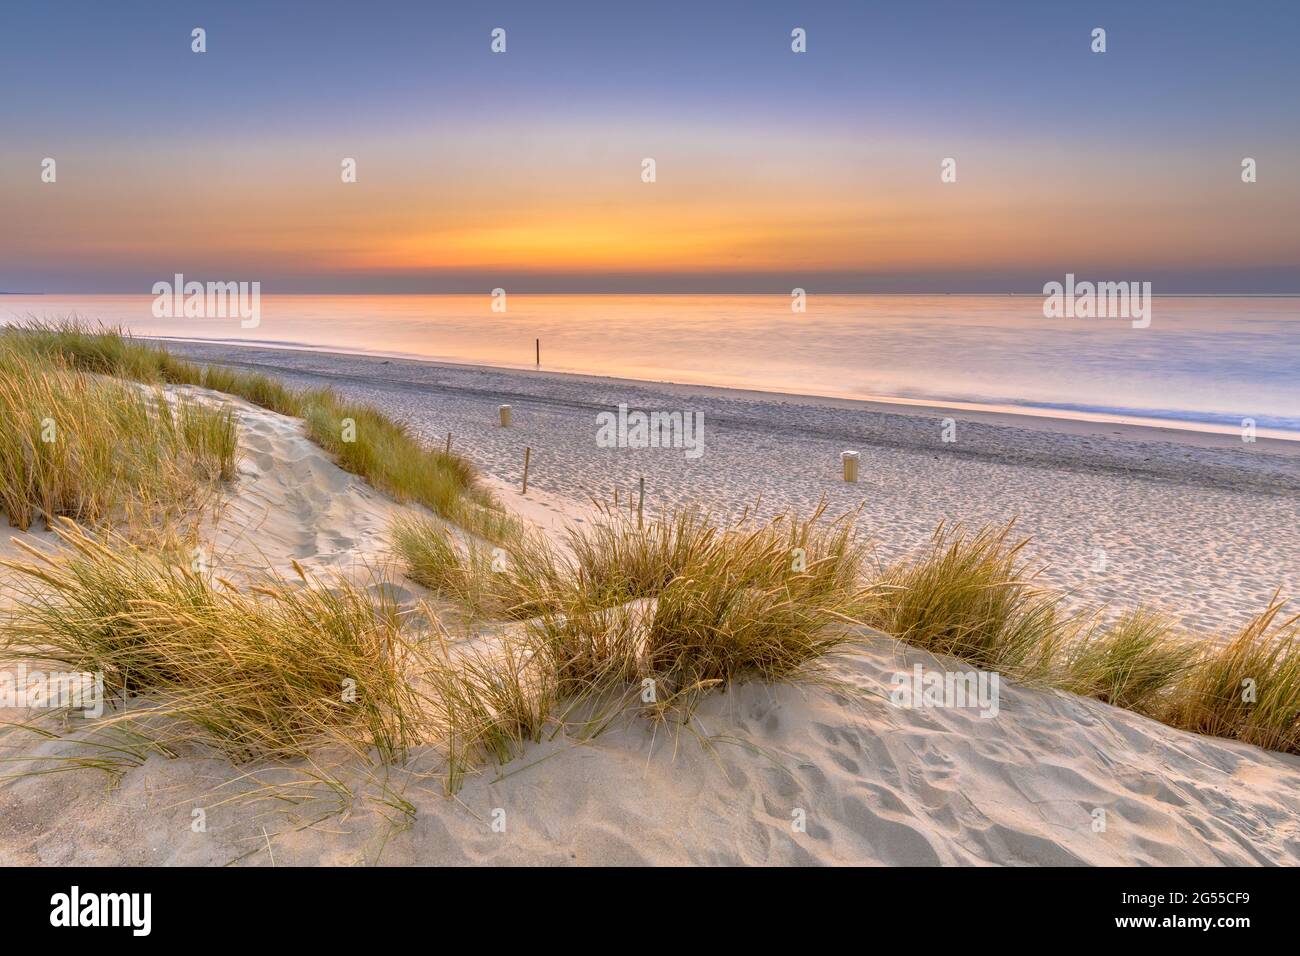 Sonnenuntergang Blick über den Ozean von der Düne über Nordsee und Kanal in Ouddorp, Provinz Zeeland, Niederlande. Outdoor-Szene der Küste in der Natur Europas. Stockfoto